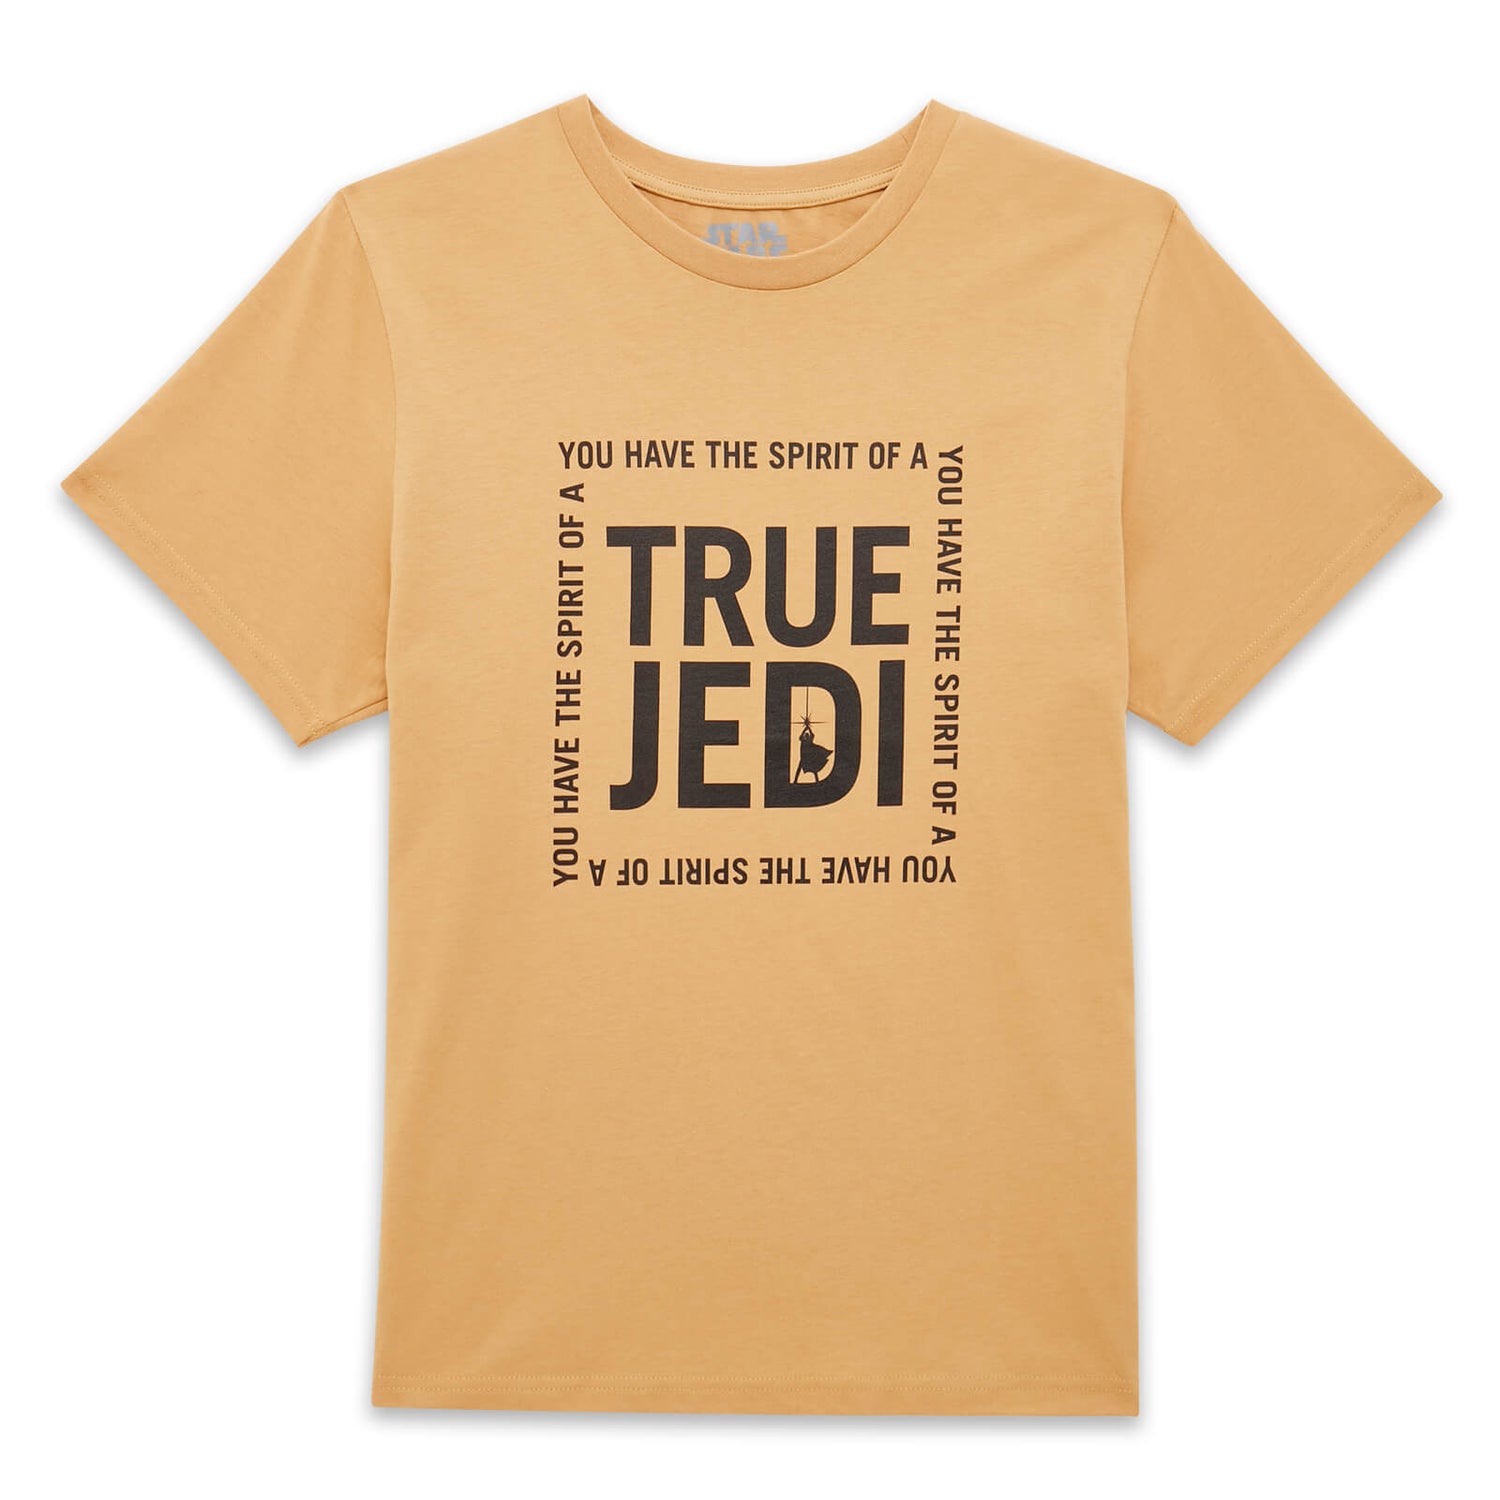 Camiseta unisex True Jedi de Star Wars - Negro